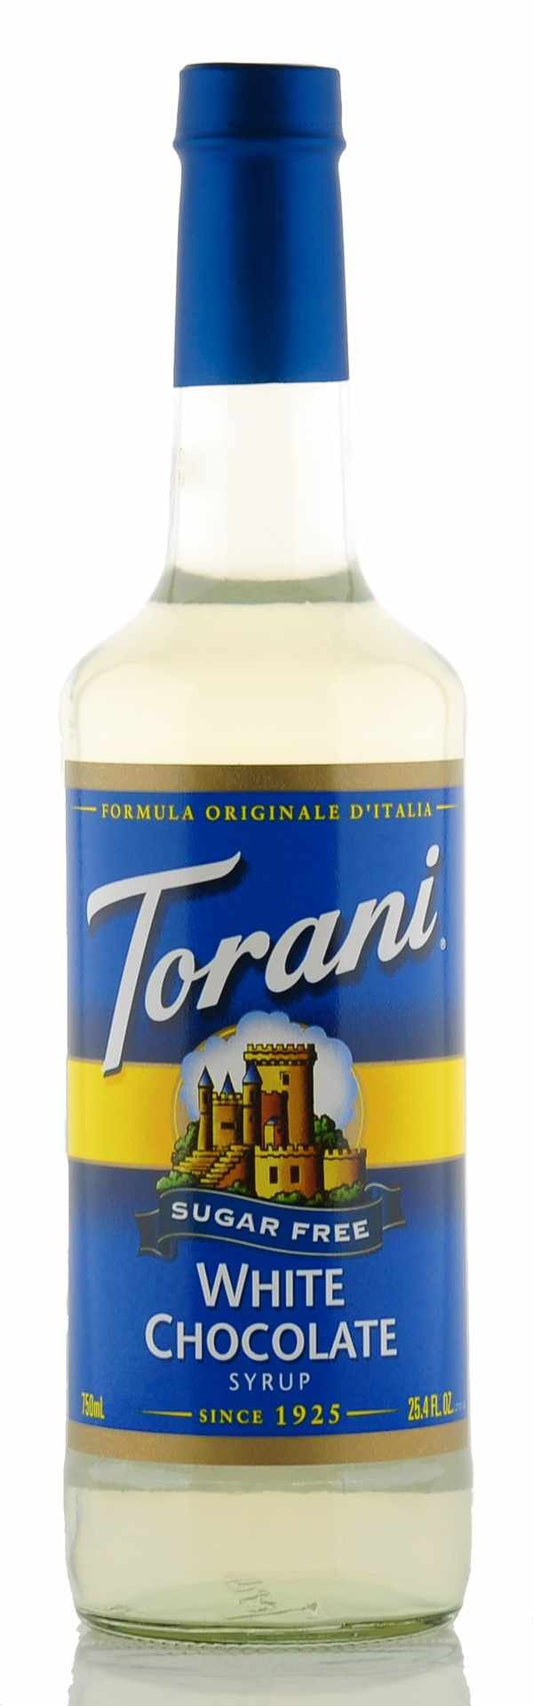 Torani Sirup zuckerfrei Geschmack weiße Schokolade